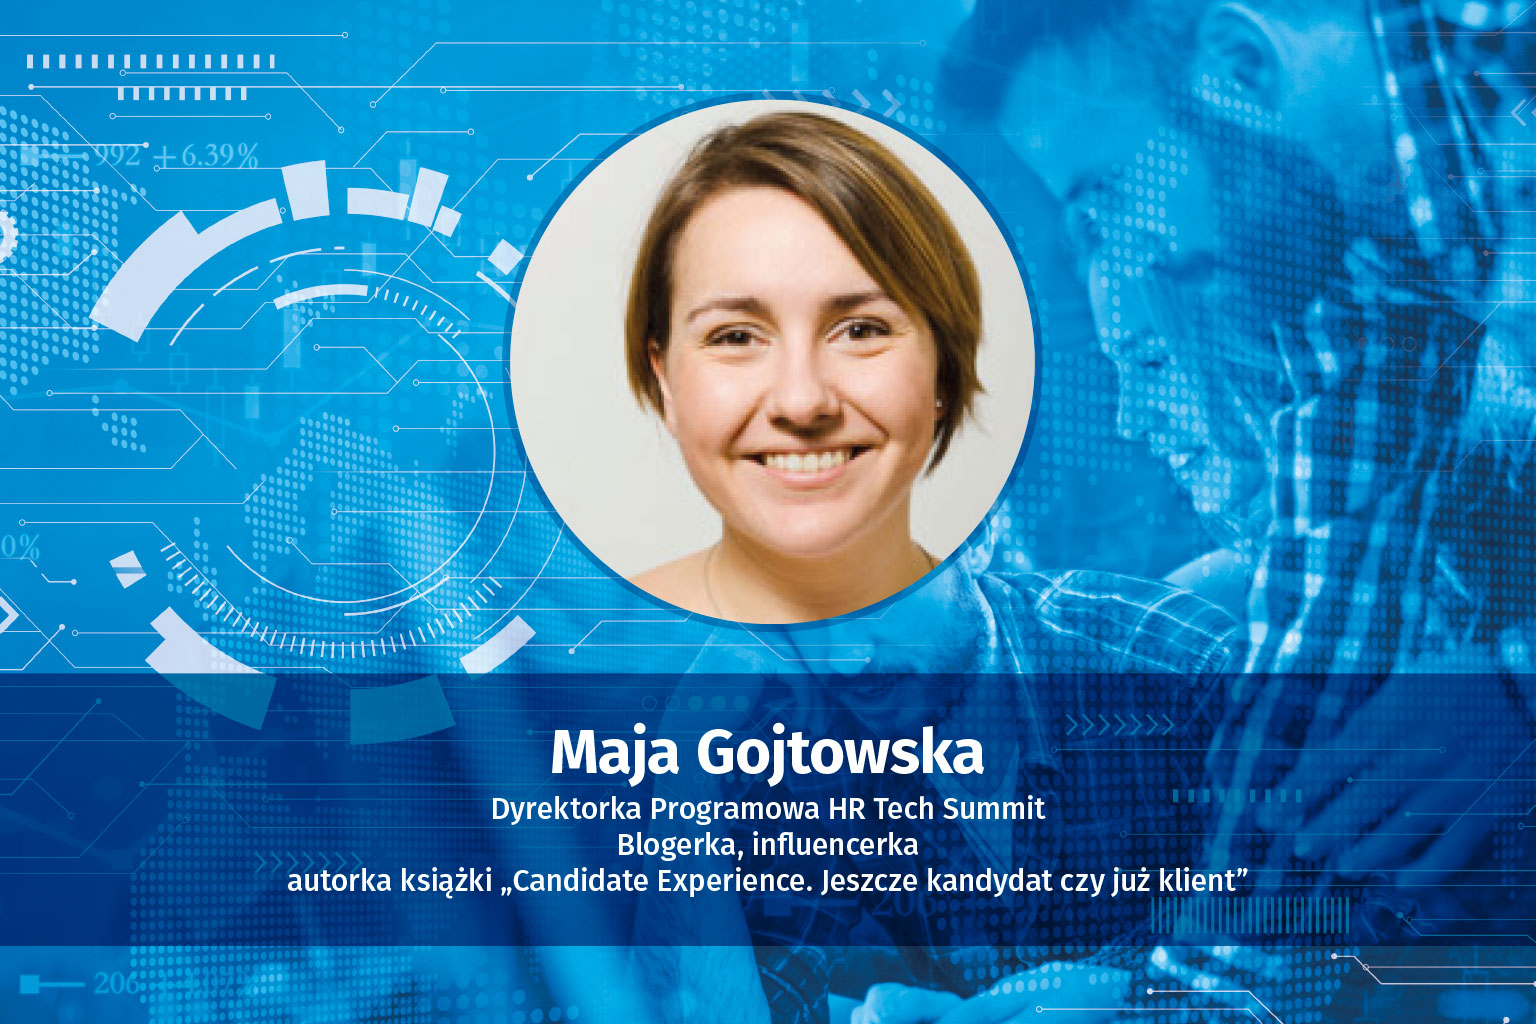 HR Tech Summit 2022 - Maja Gojtowska